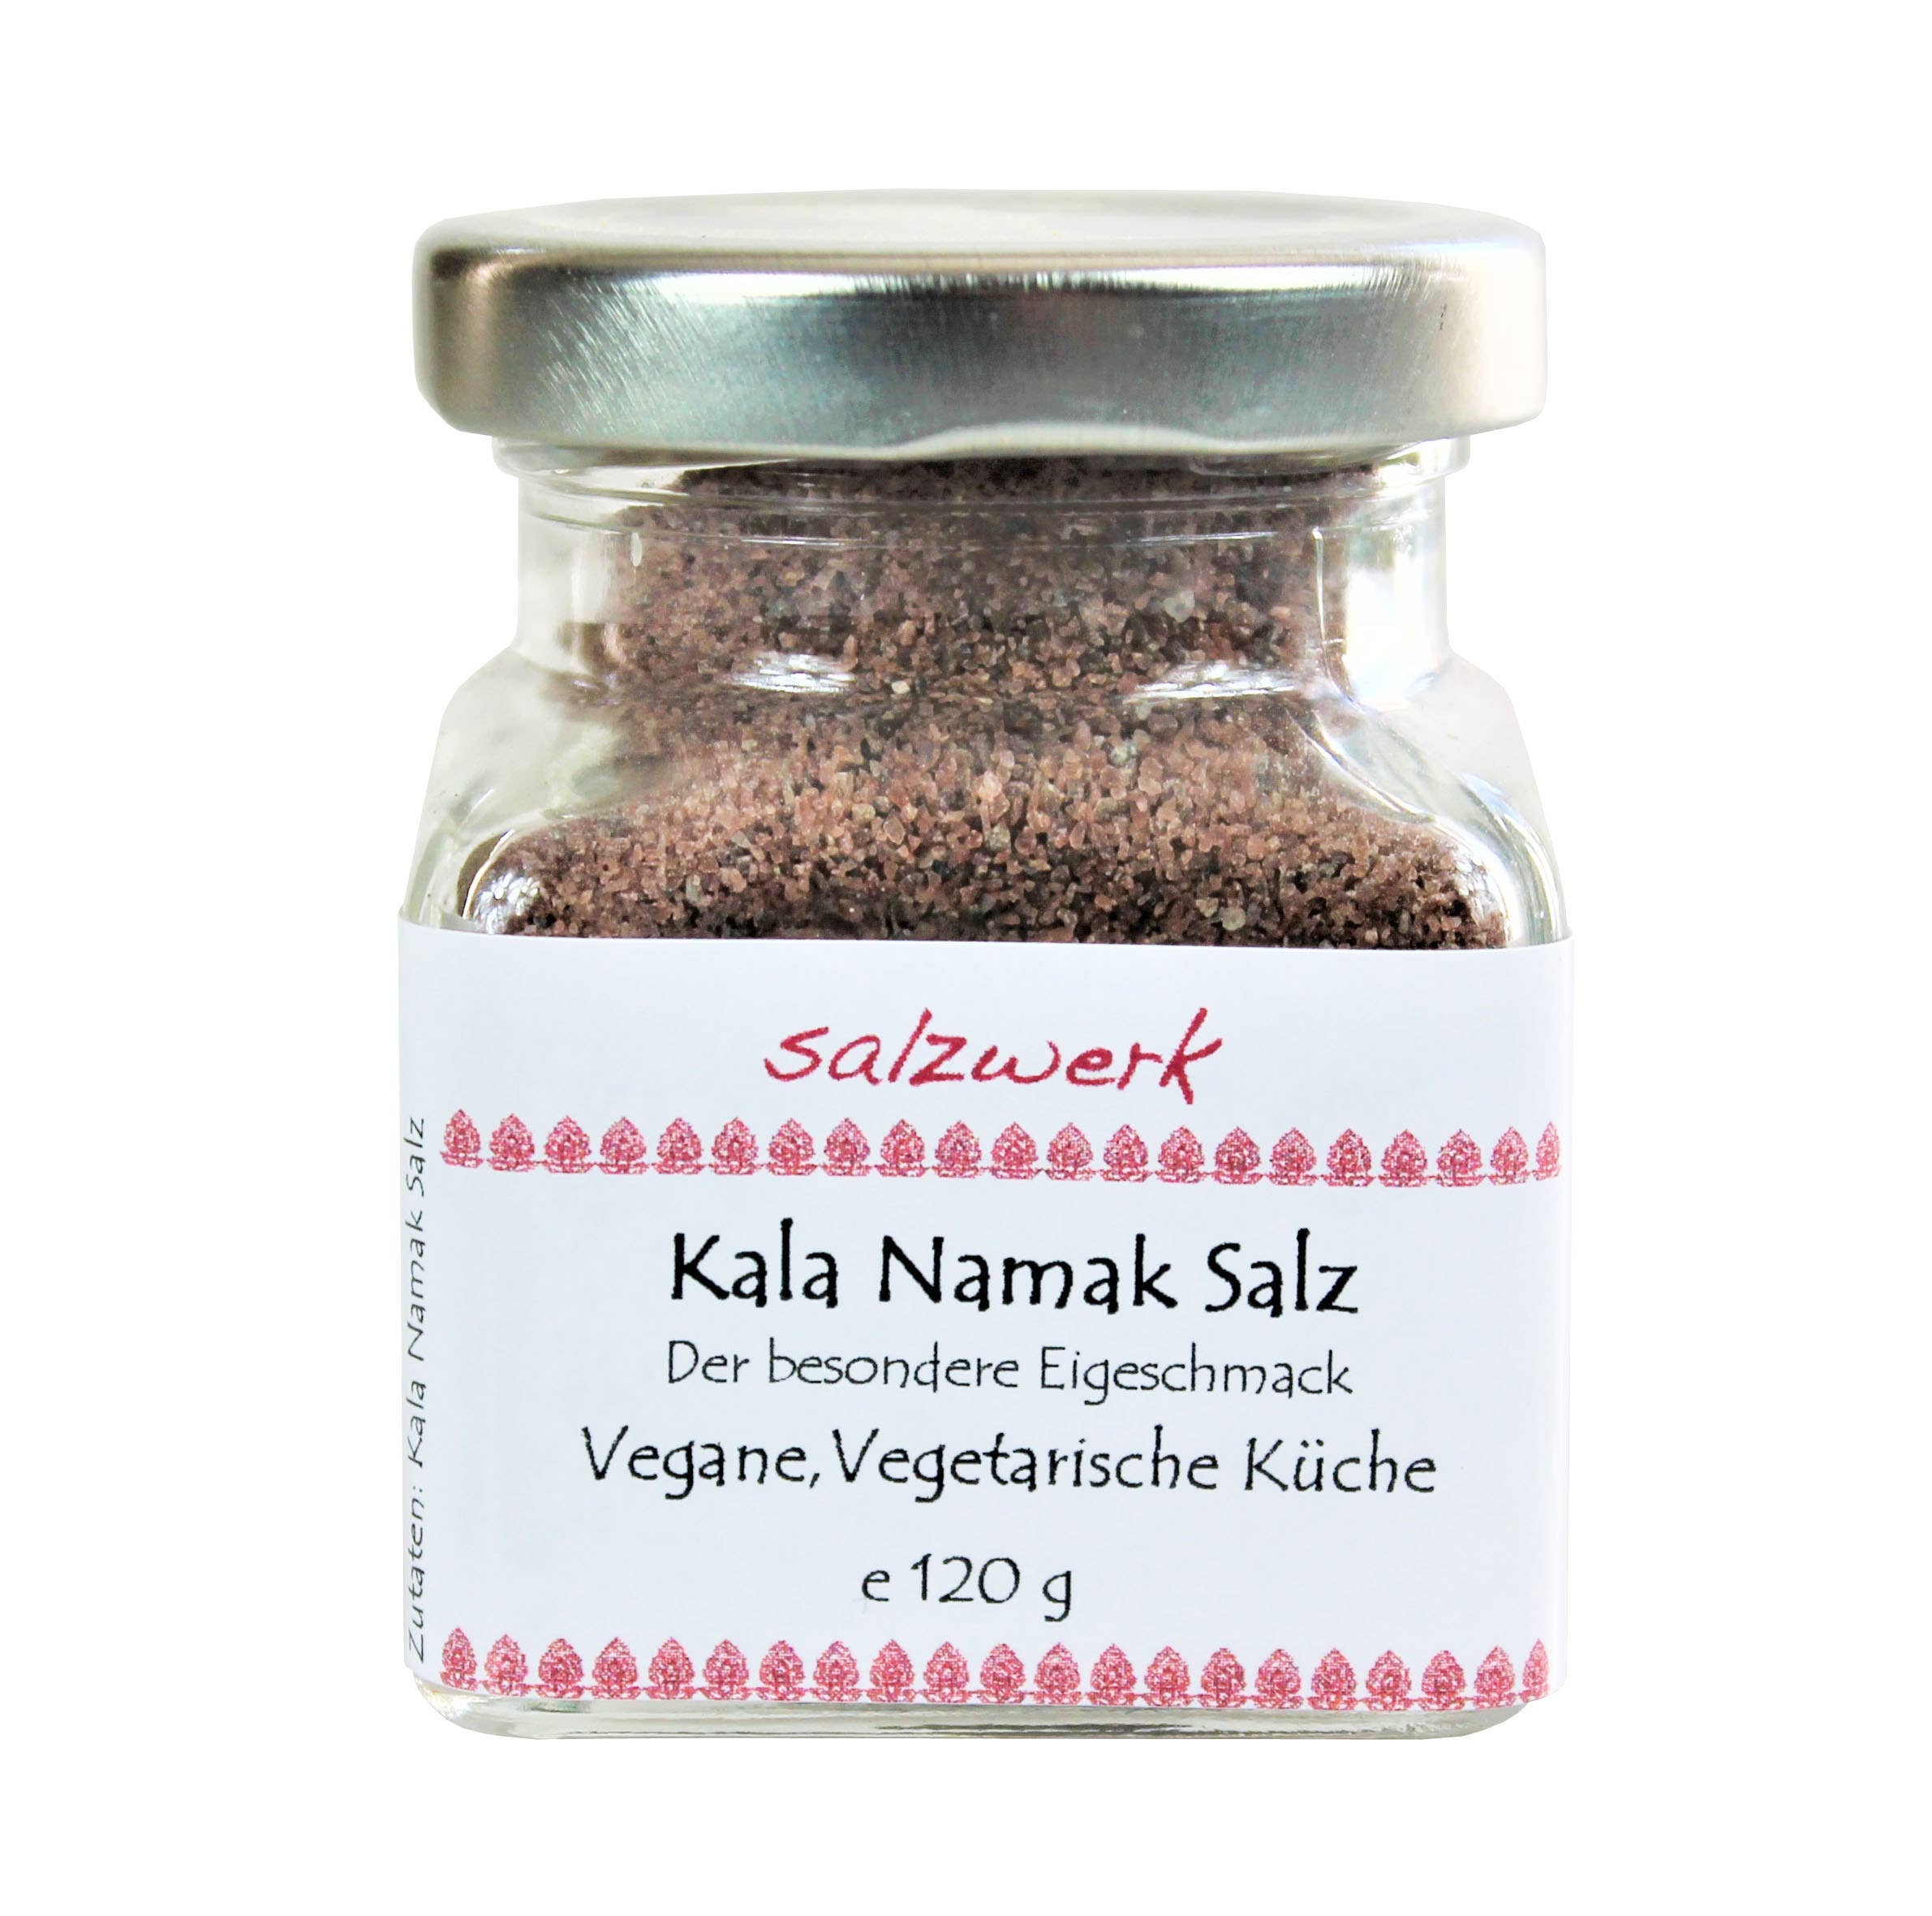 Wholesale Kala Namak salt for your store - Faire